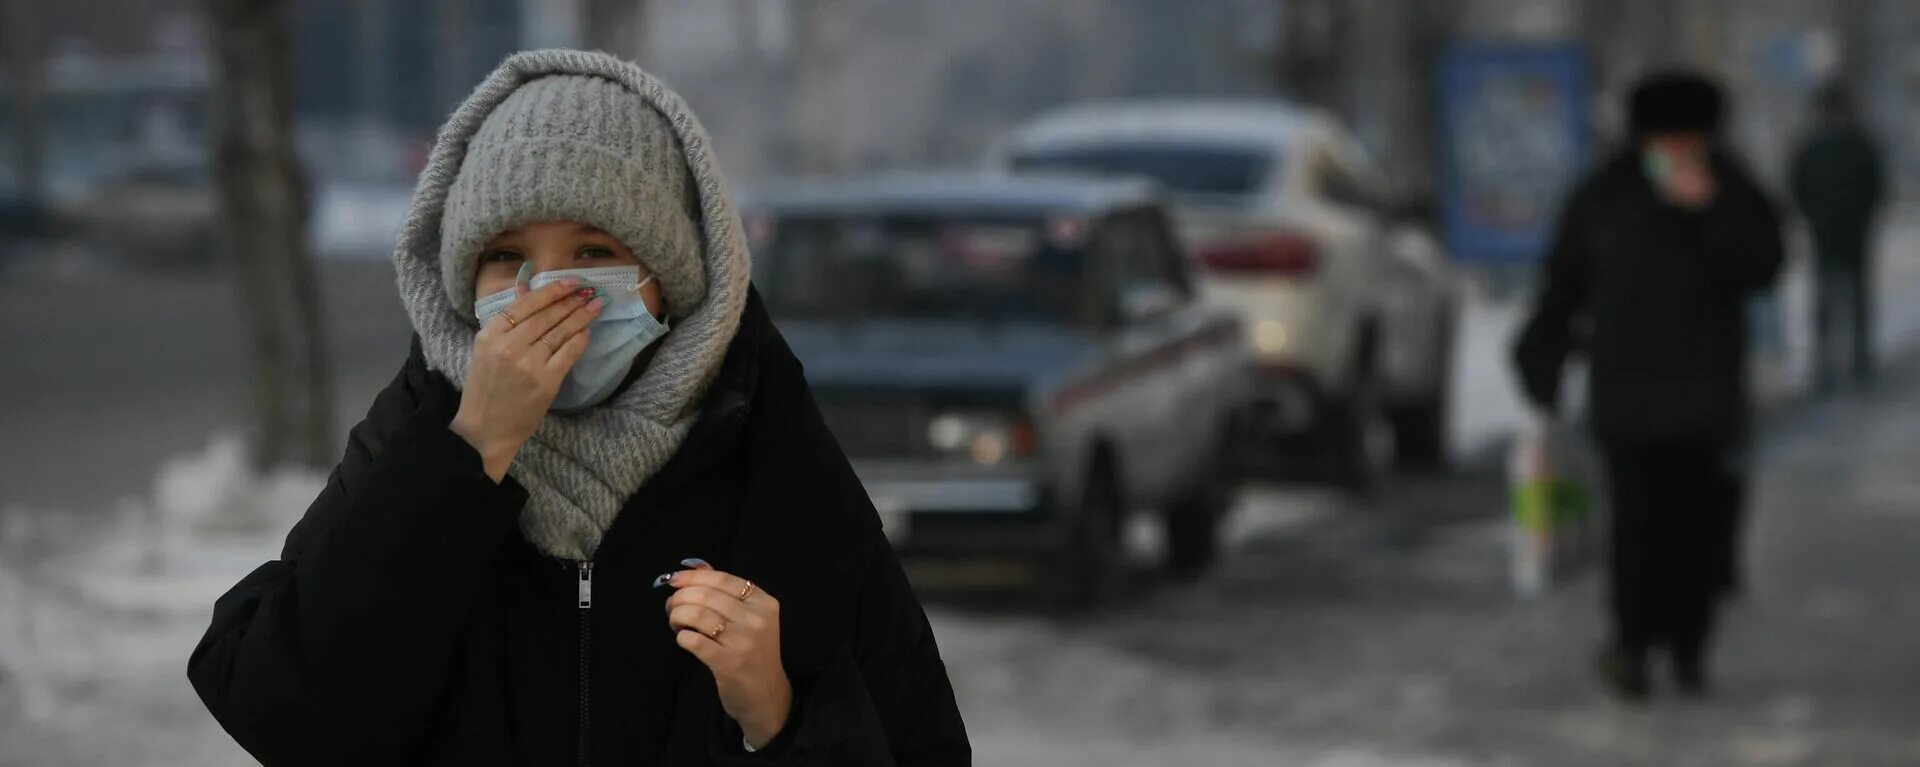 Snow Кыргызстана. Почему нара ходит в маске